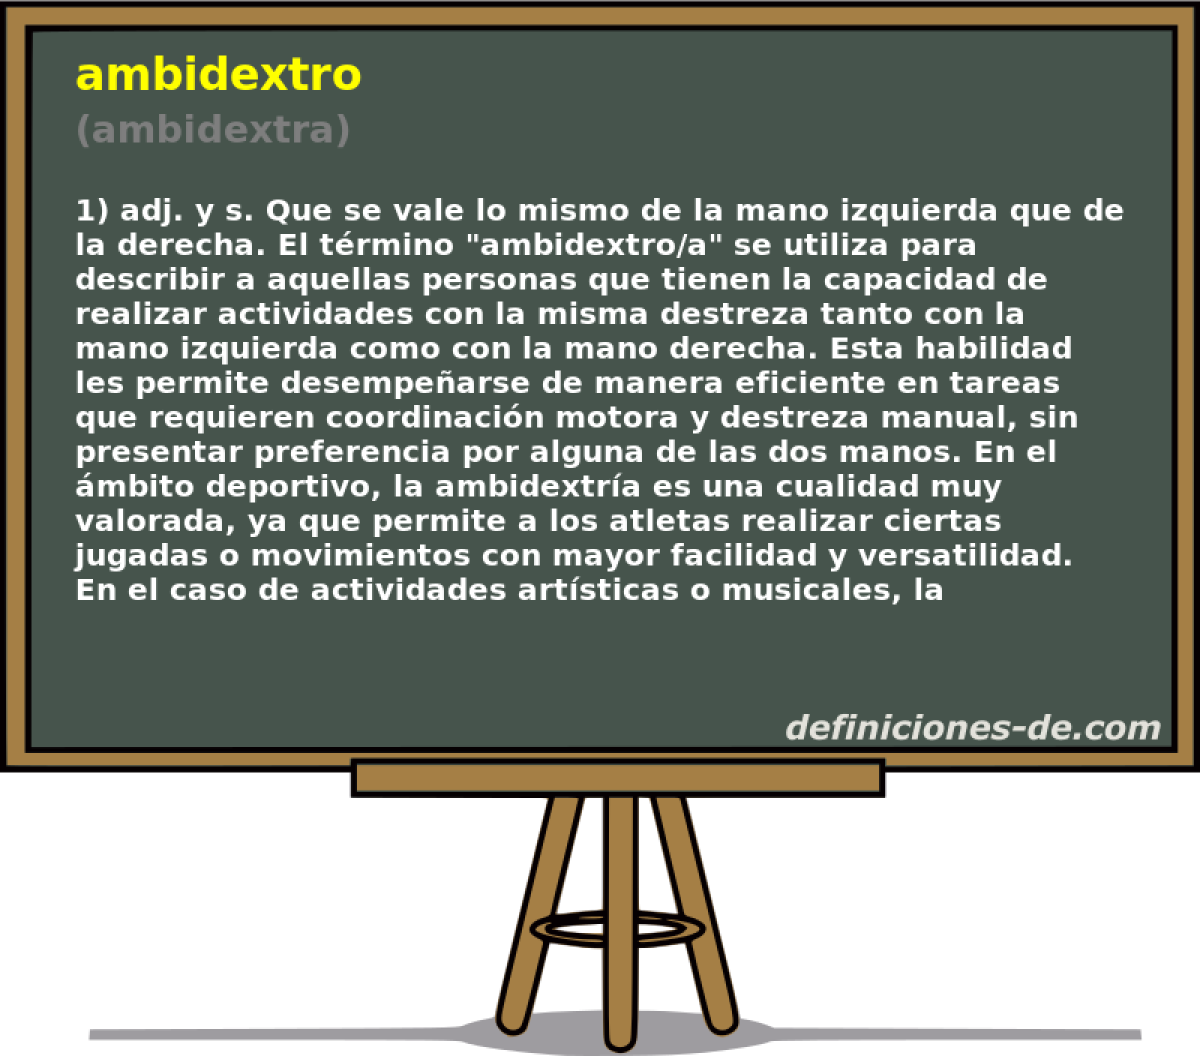 ambidextro (ambidextra)